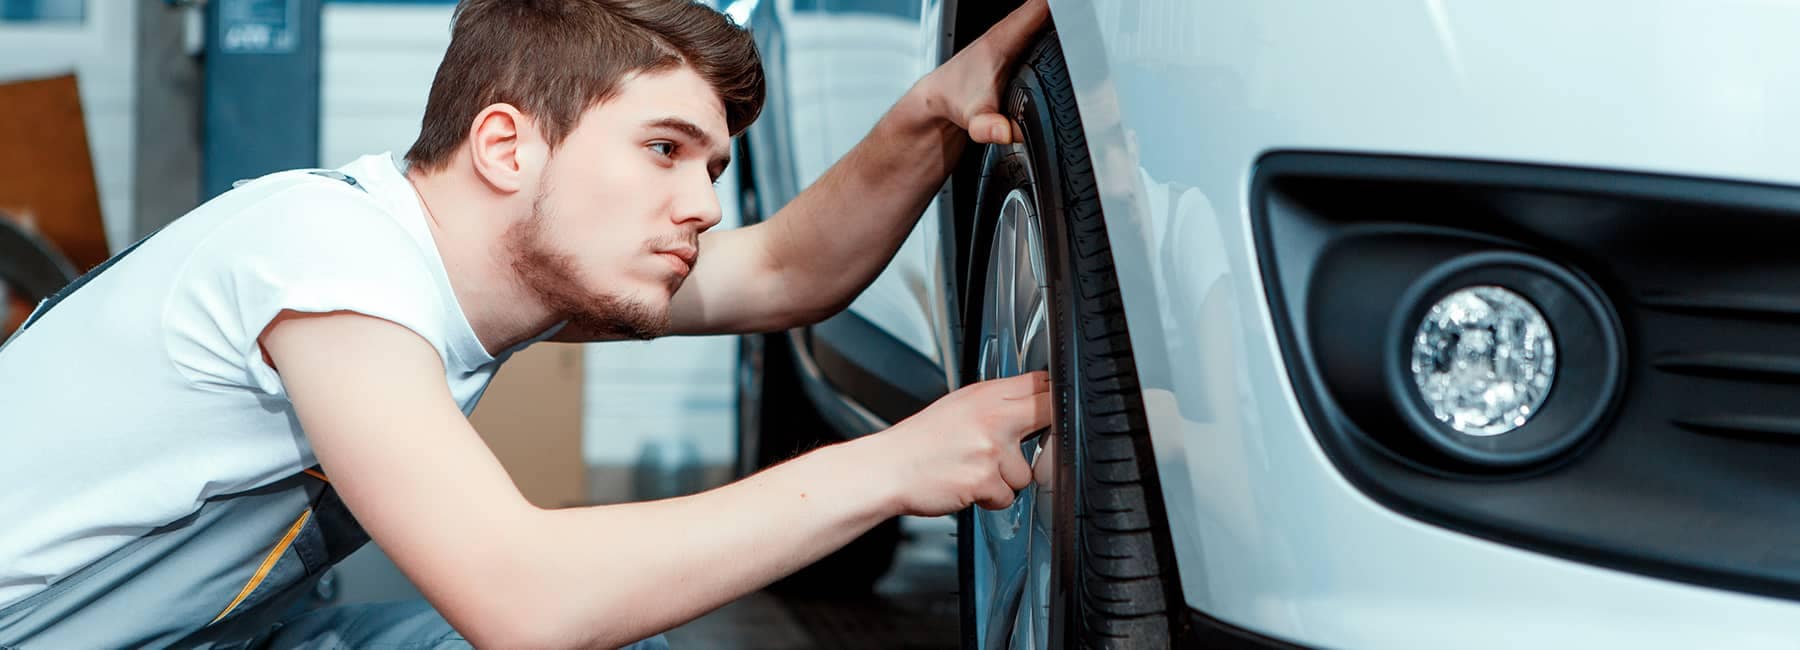 technician examines car tires